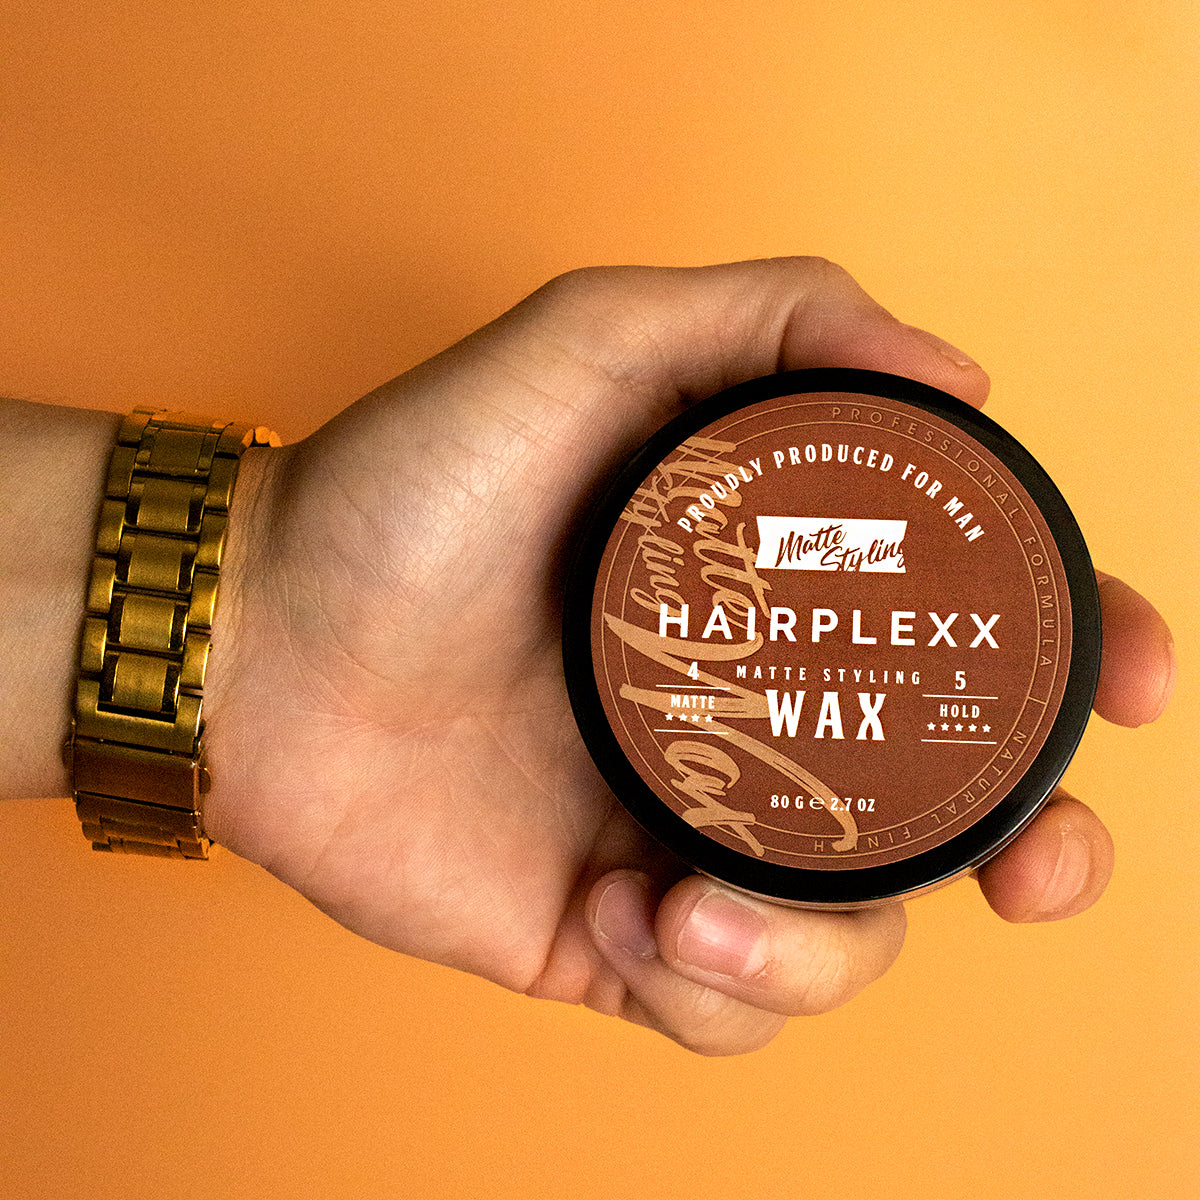 Hairplexx Matte Styling Wax